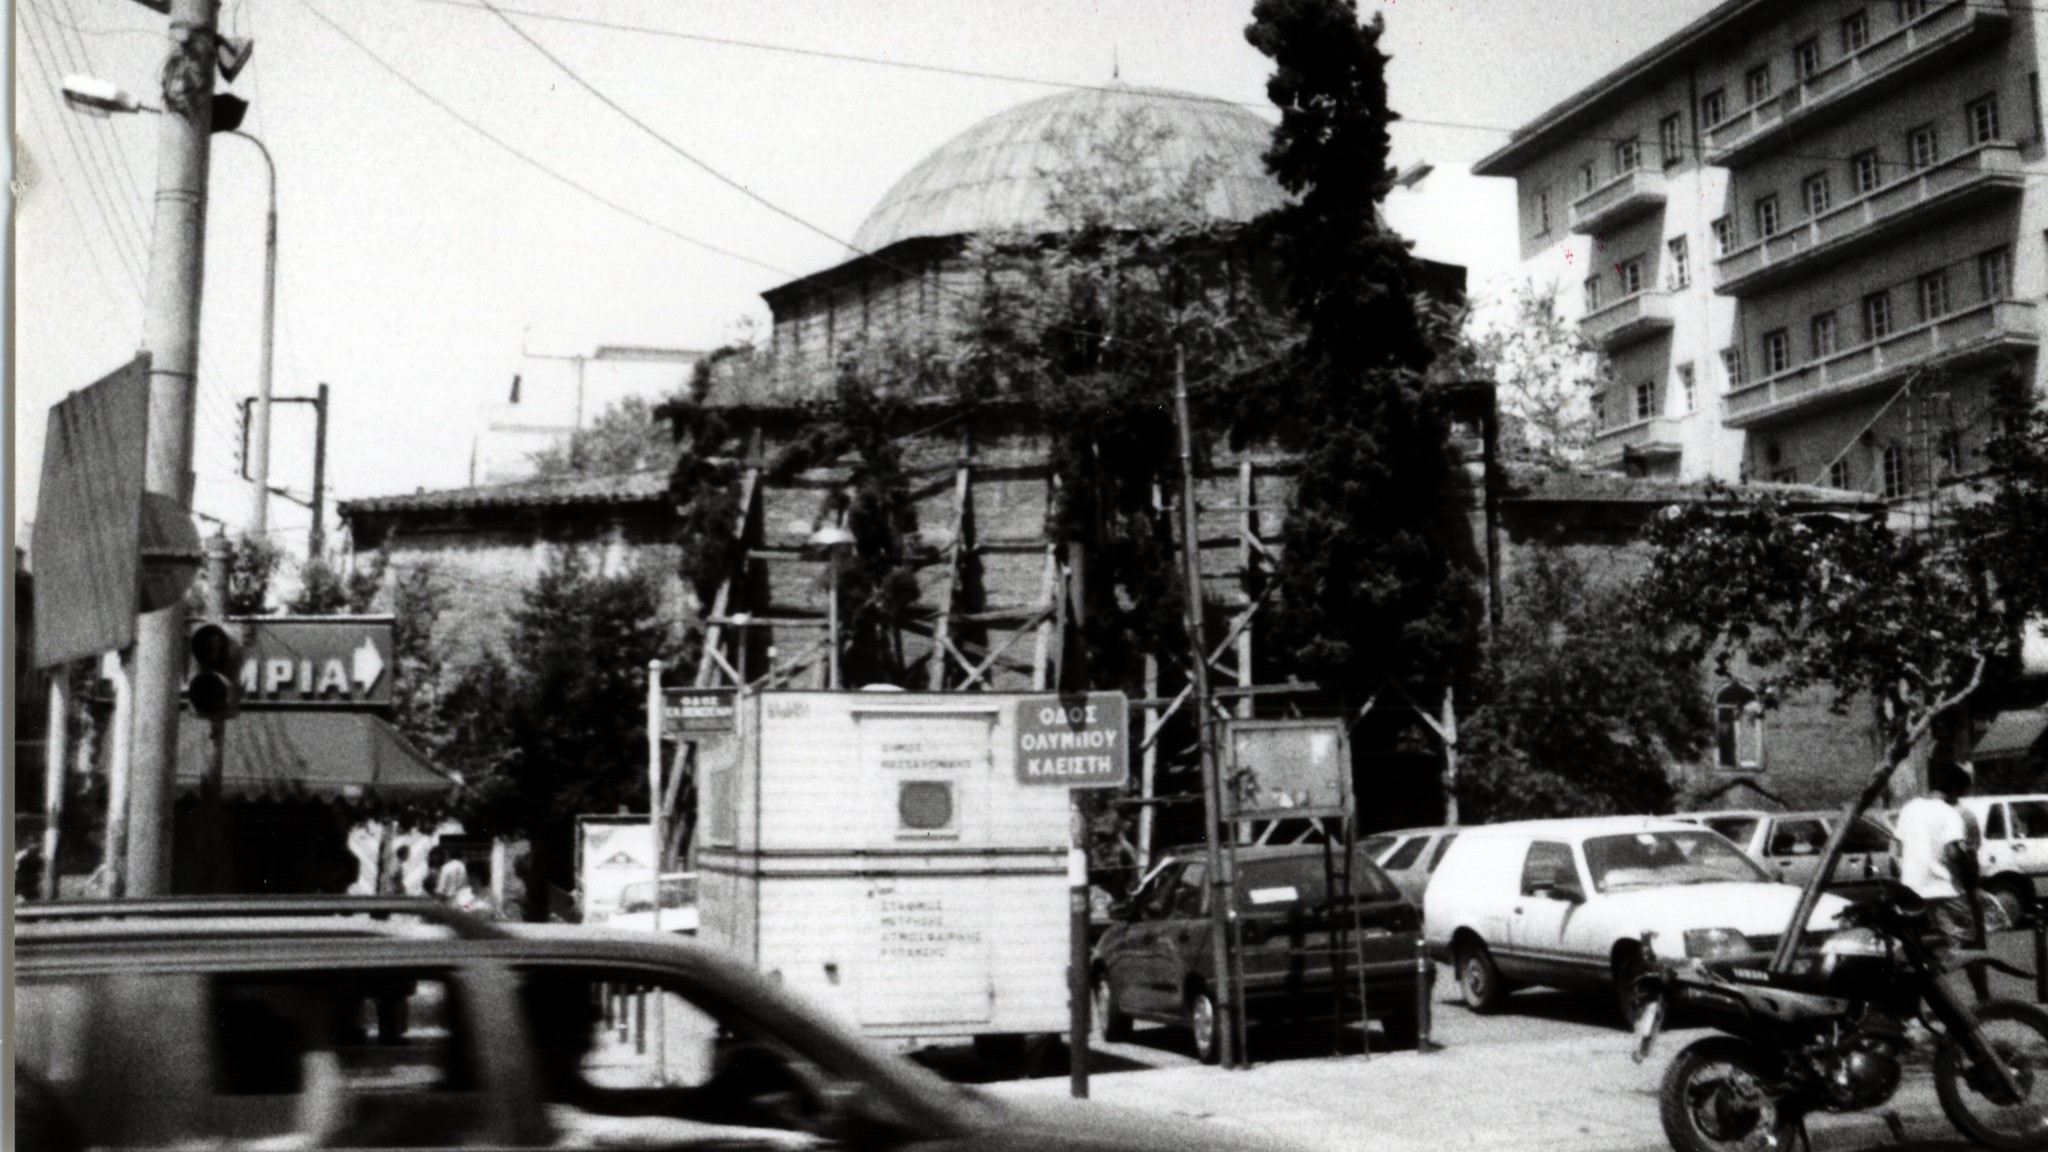 La mosquée Hamza-Bey est devenue le cinéma Alkazár, vu ici en 1993 (Flickr/Ken Mayer)